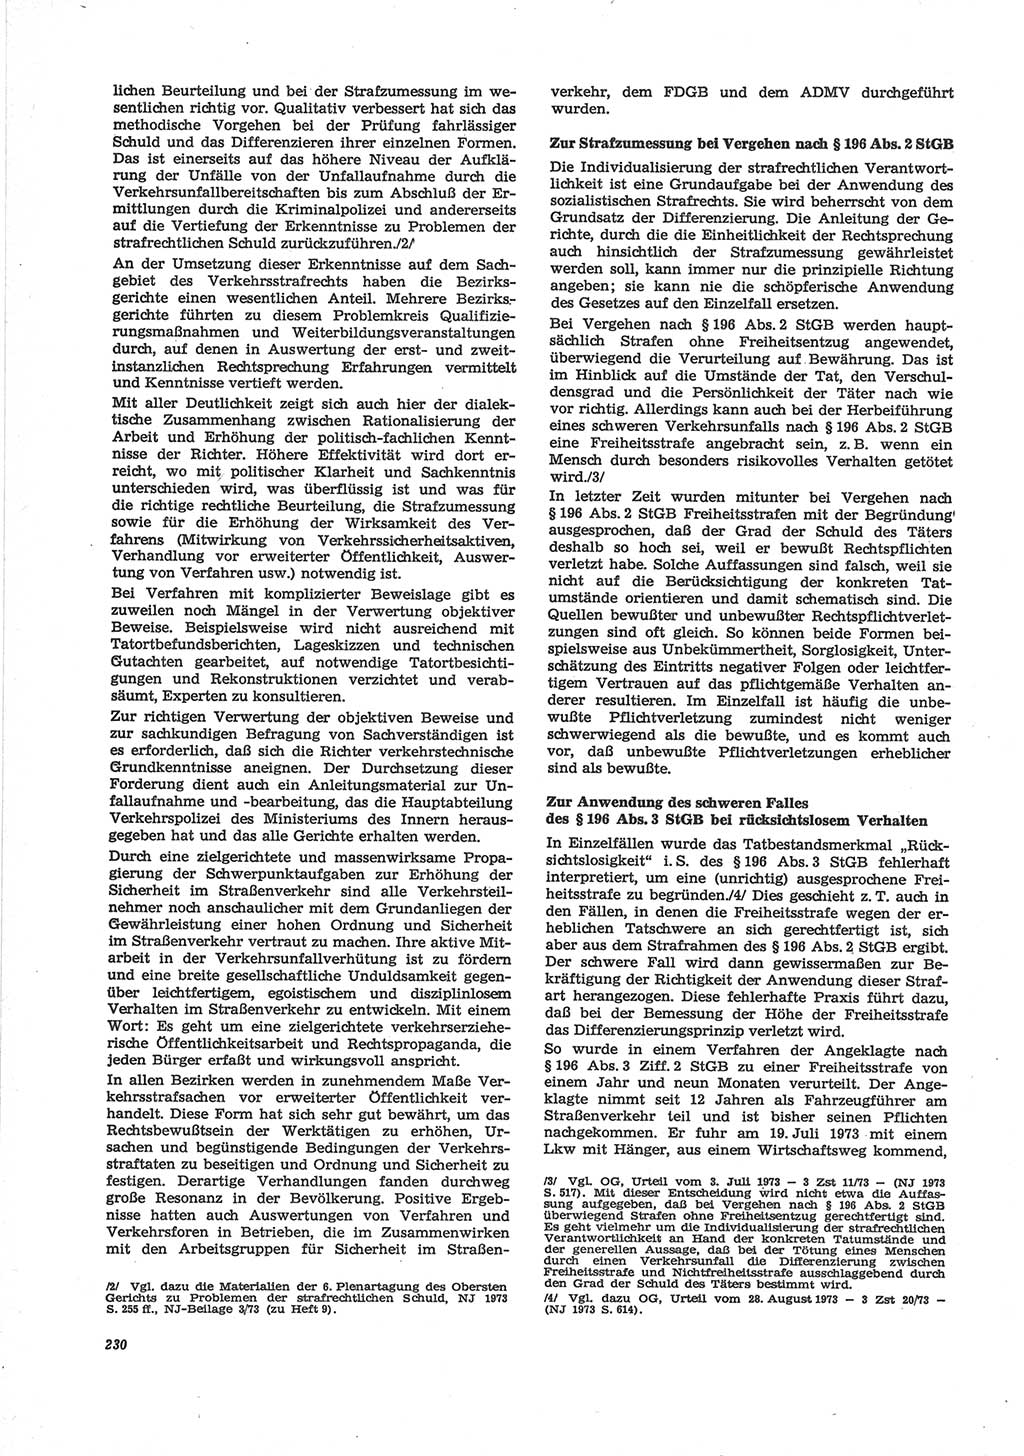 Neue Justiz (NJ), Zeitschrift für Recht und Rechtswissenschaft [Deutsche Demokratische Republik (DDR)], 28. Jahrgang 1974, Seite 230 (NJ DDR 1974, S. 230)